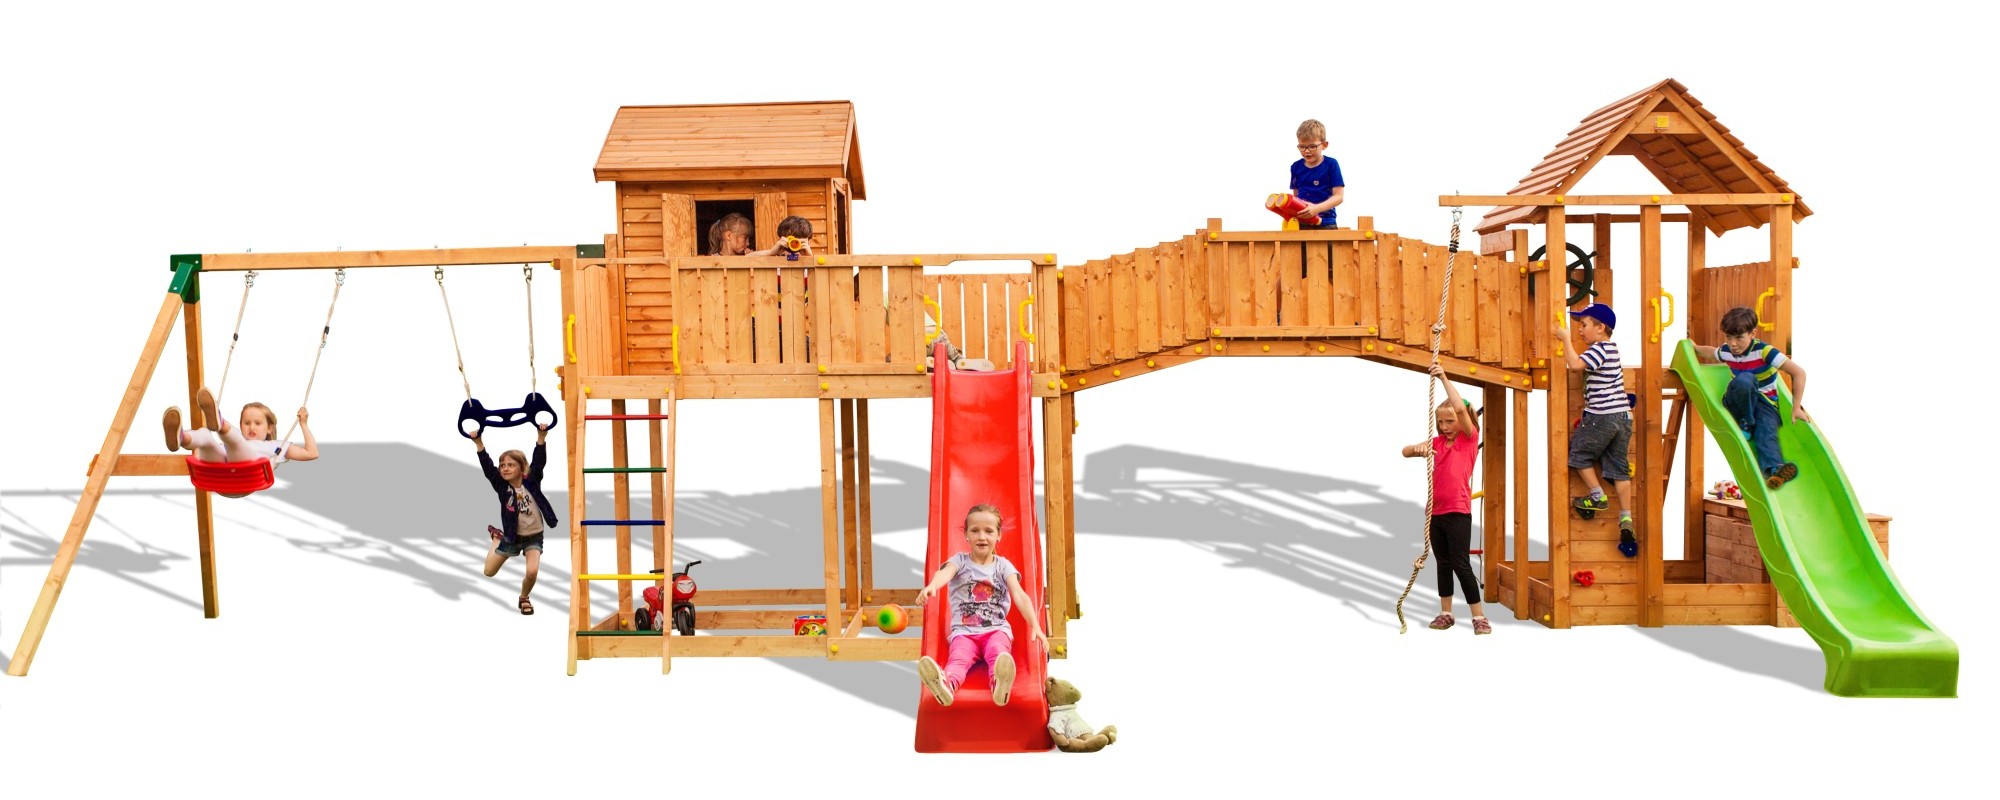 Plac zabaw drewniany XXL Smile Farm 2x domek, 2x zjedalnia, 2x hutawka, cianka i lina wspinaczkowa, drabinki, most